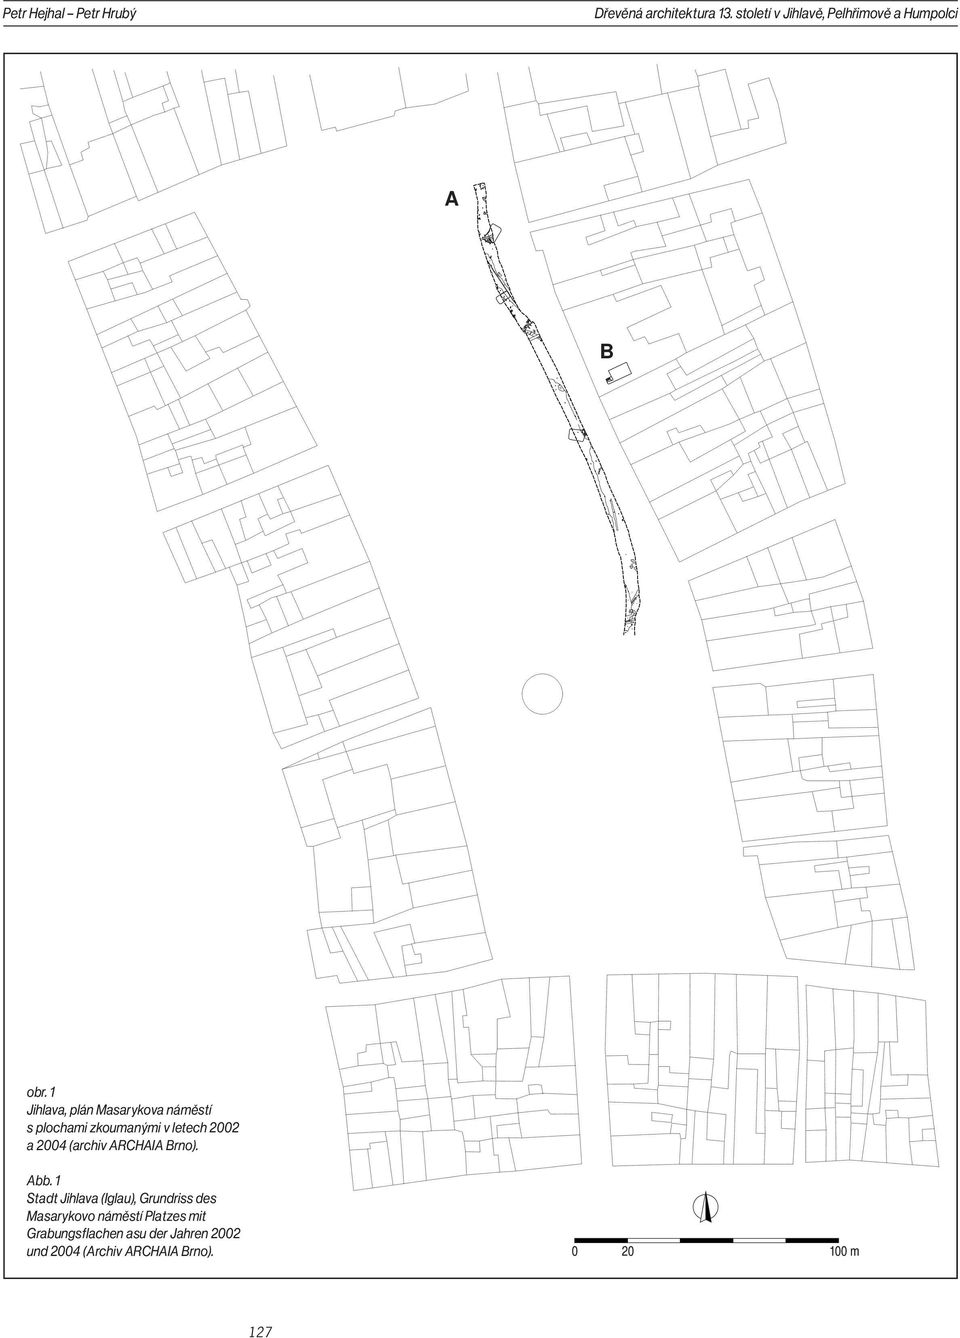 1 Jihlava, plán Masarykova náměstí s plochami zkoumanými v letech 2002 a 2004